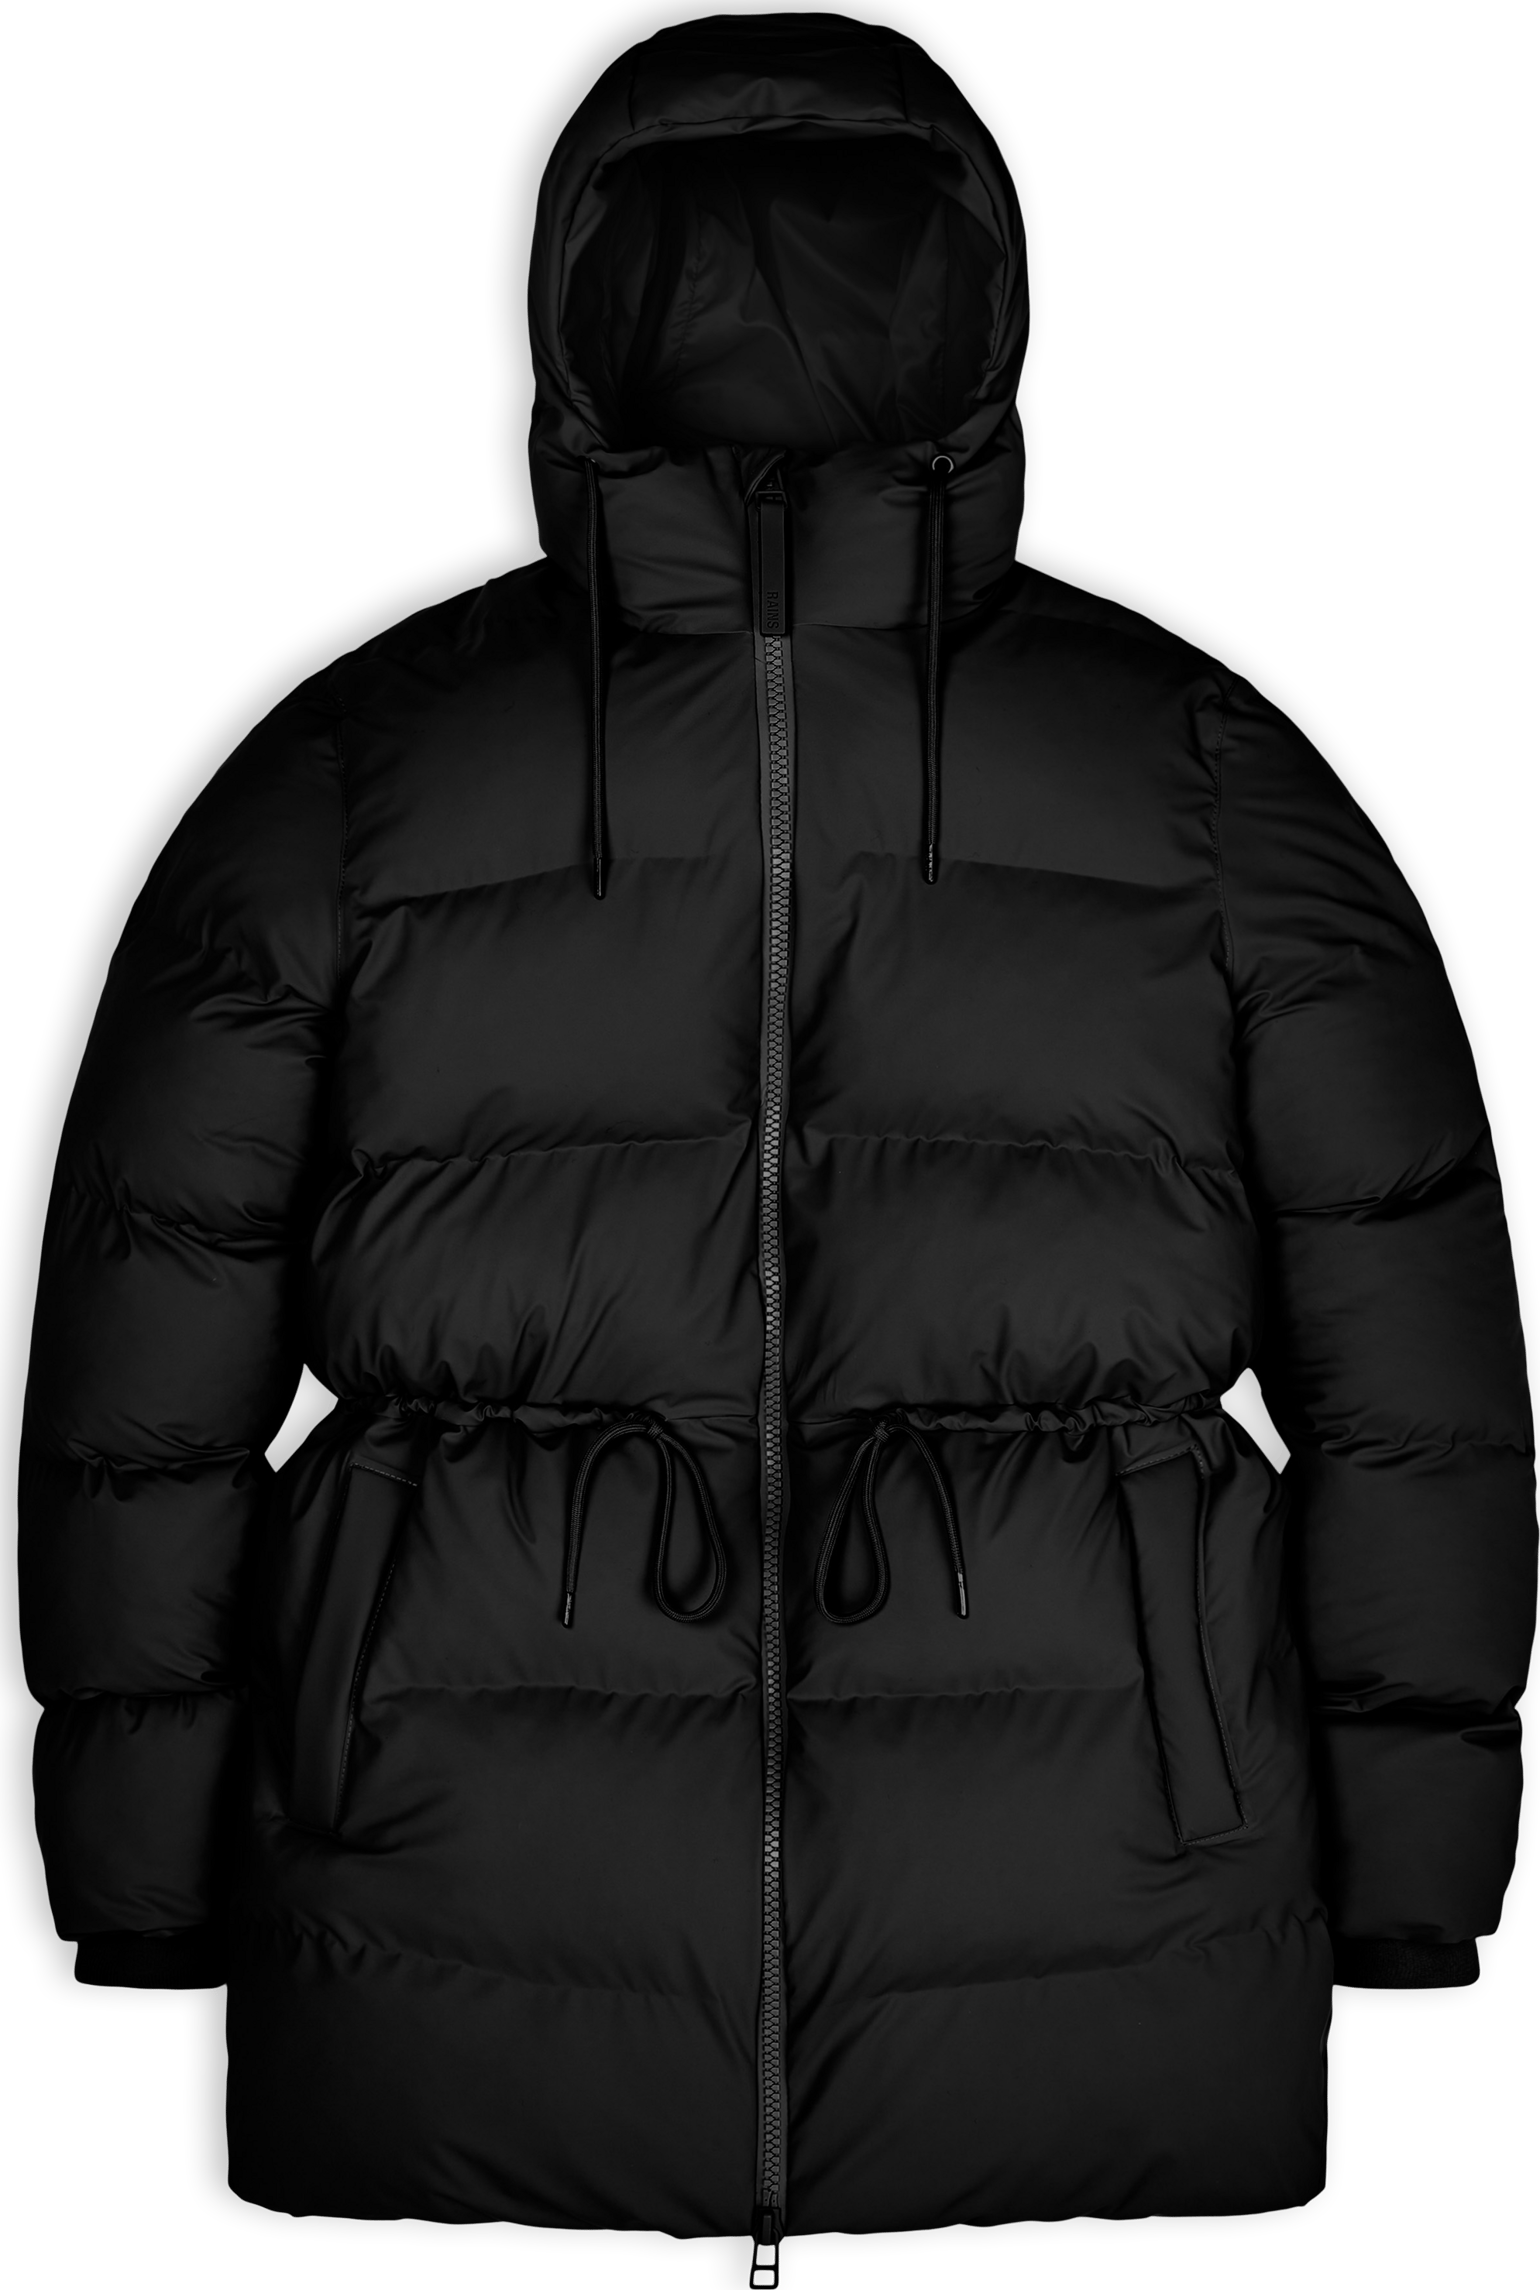 Women's Puffer Jacket Black